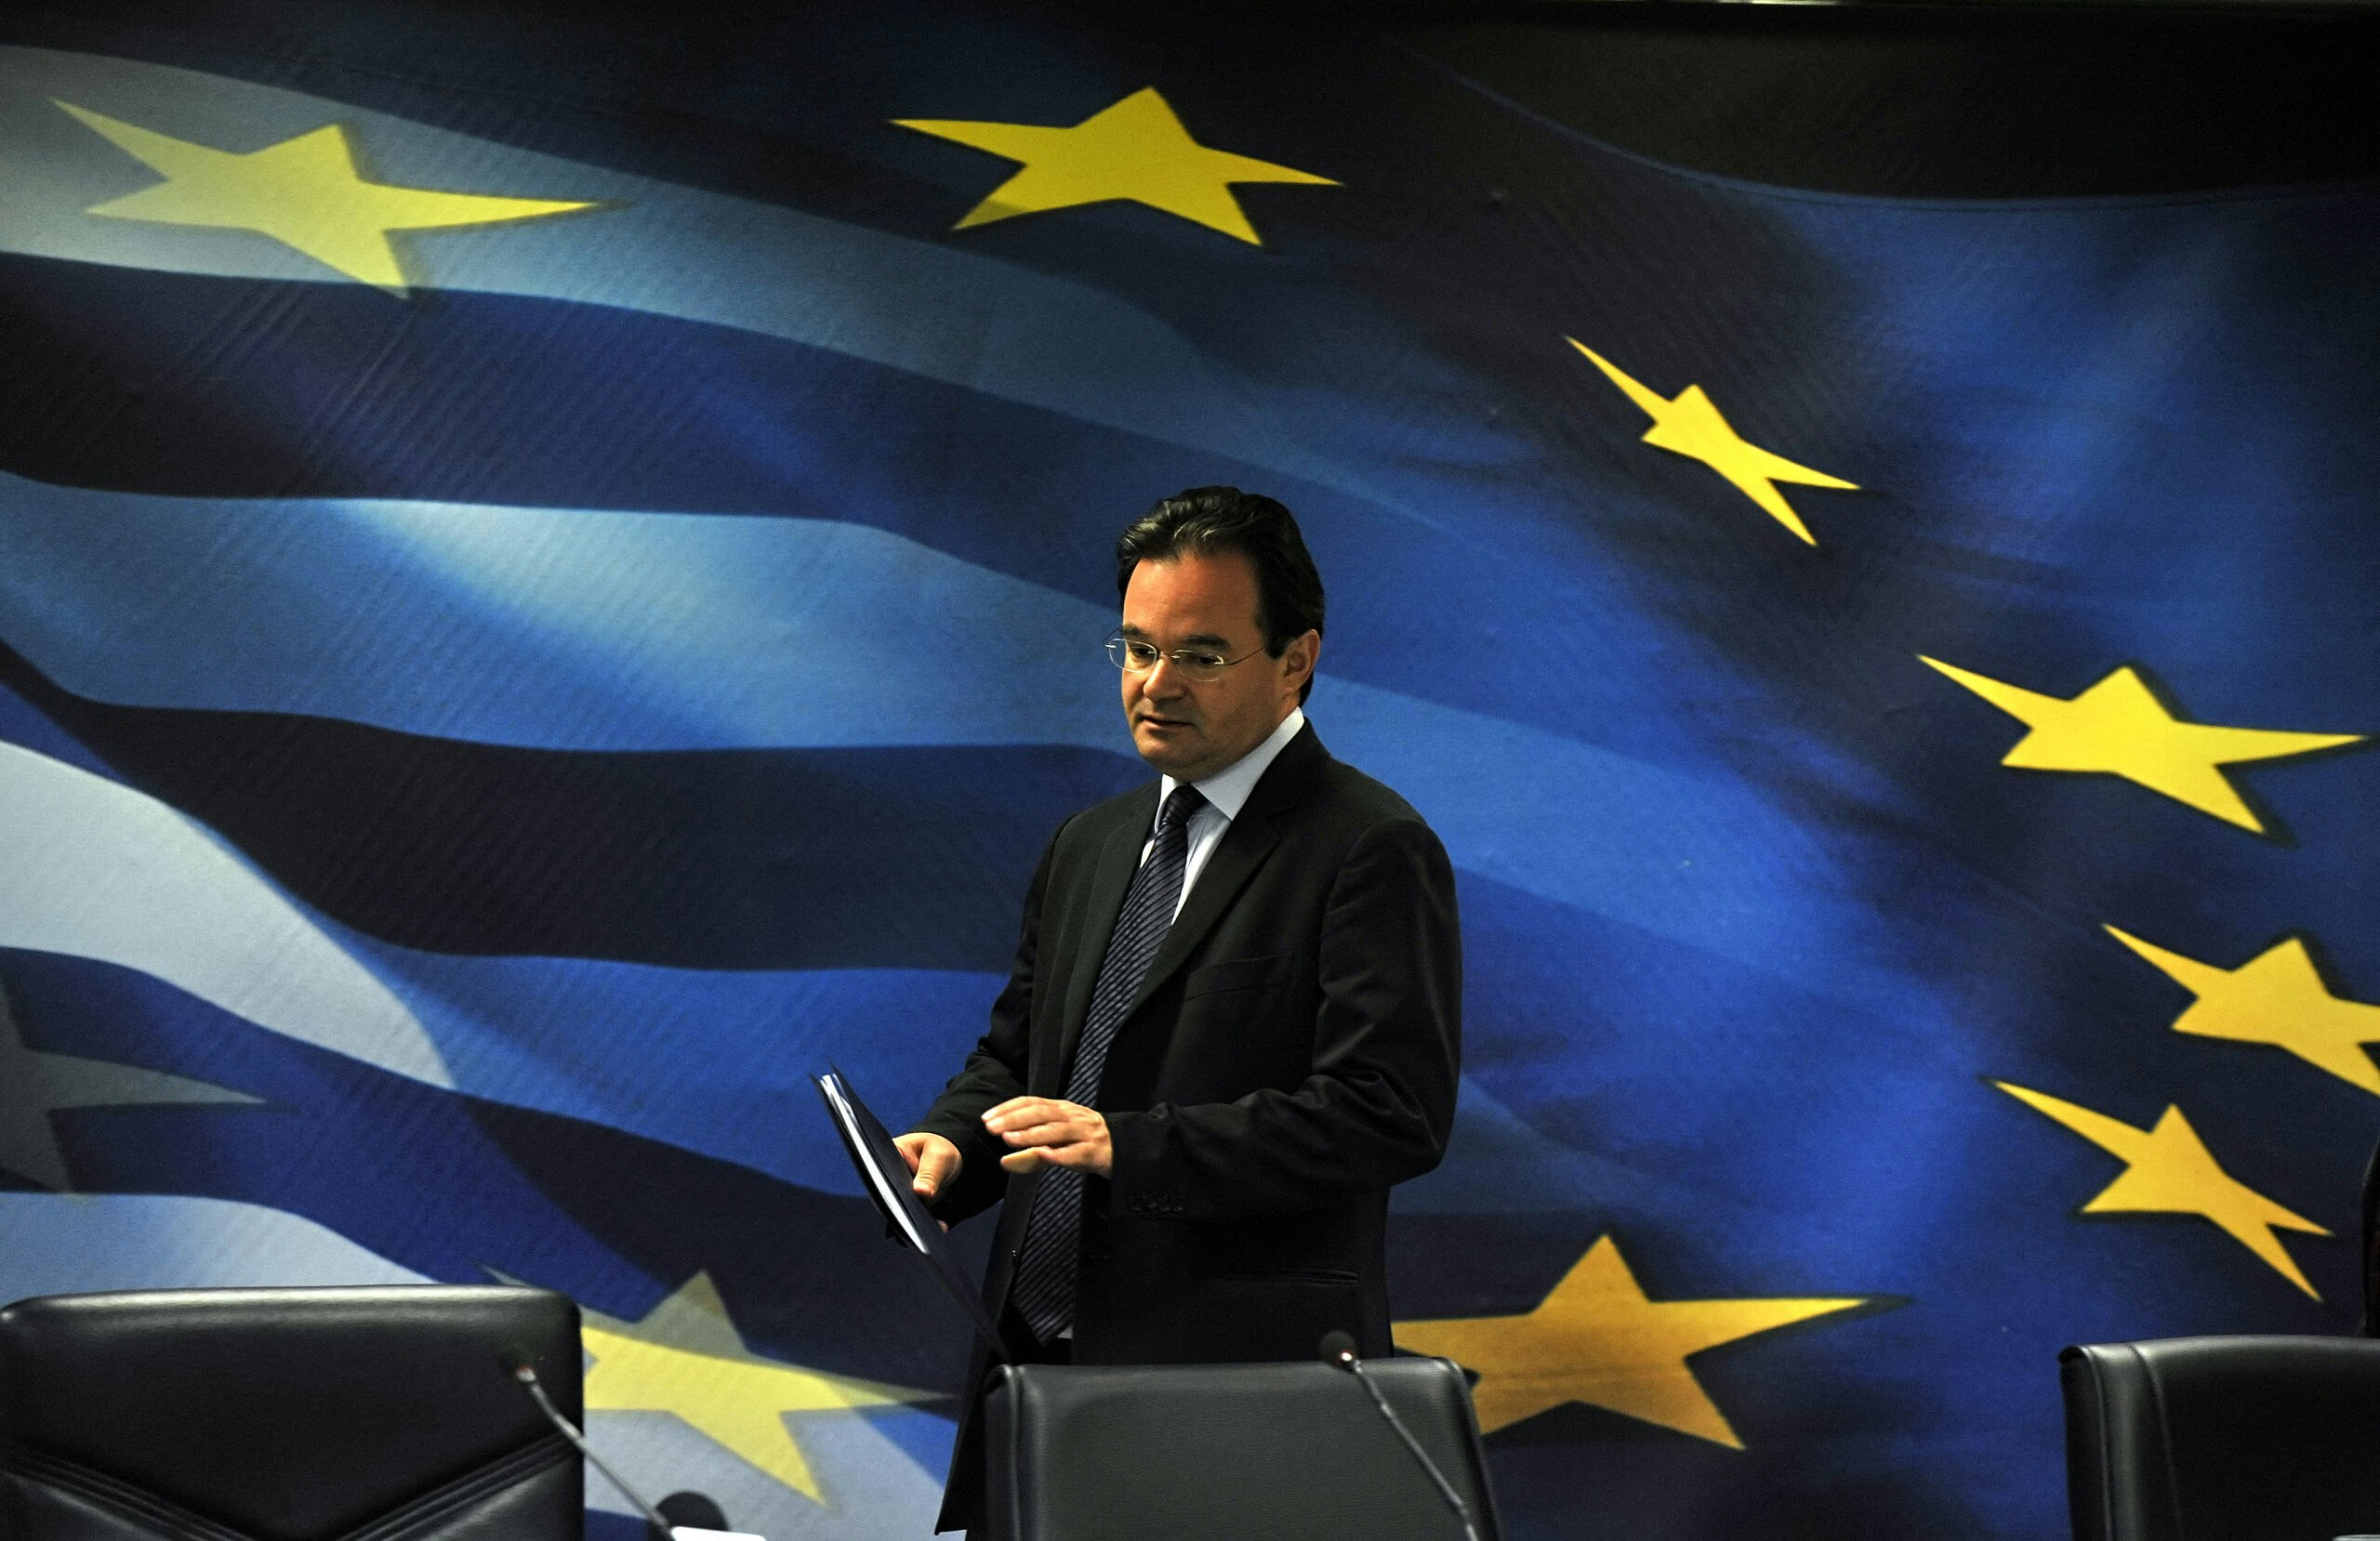 De Griekse minister van financiën George Papaconstantinou noemt het Frans-Duitse plan 'een ramp', maar naar hem wordt nauwelijks geluisterd.